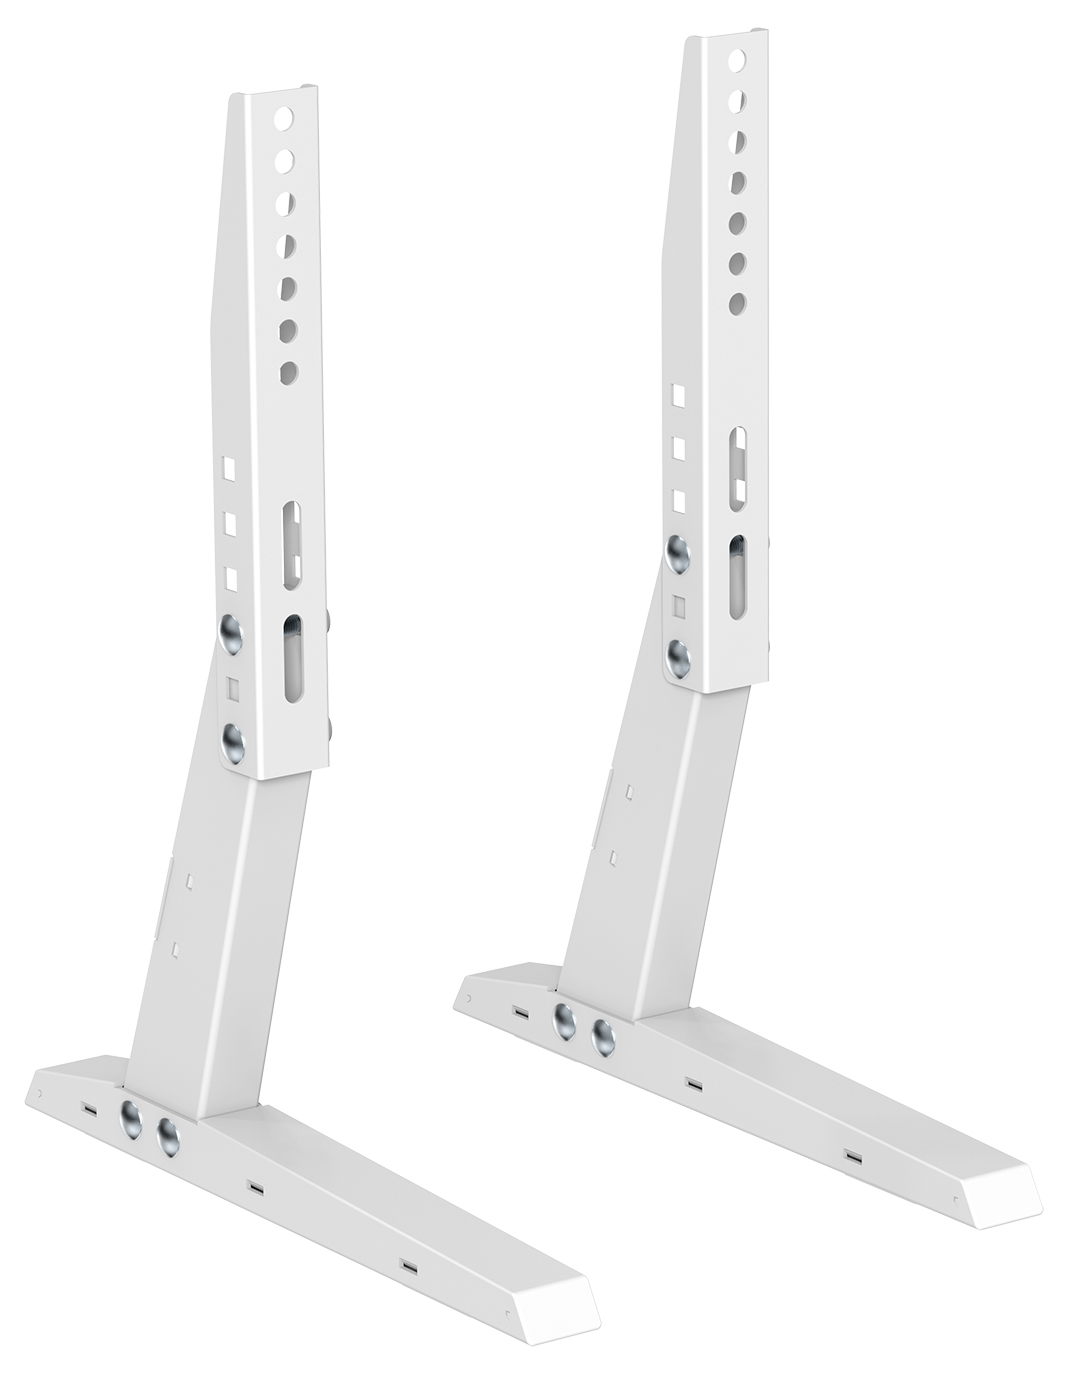 Universal Standfuß für Flachbildschirme MyWall HP35W für Bildschirme 13''-37" (33-94 cm),Belastung bis 35 kg 2 Stück weiß